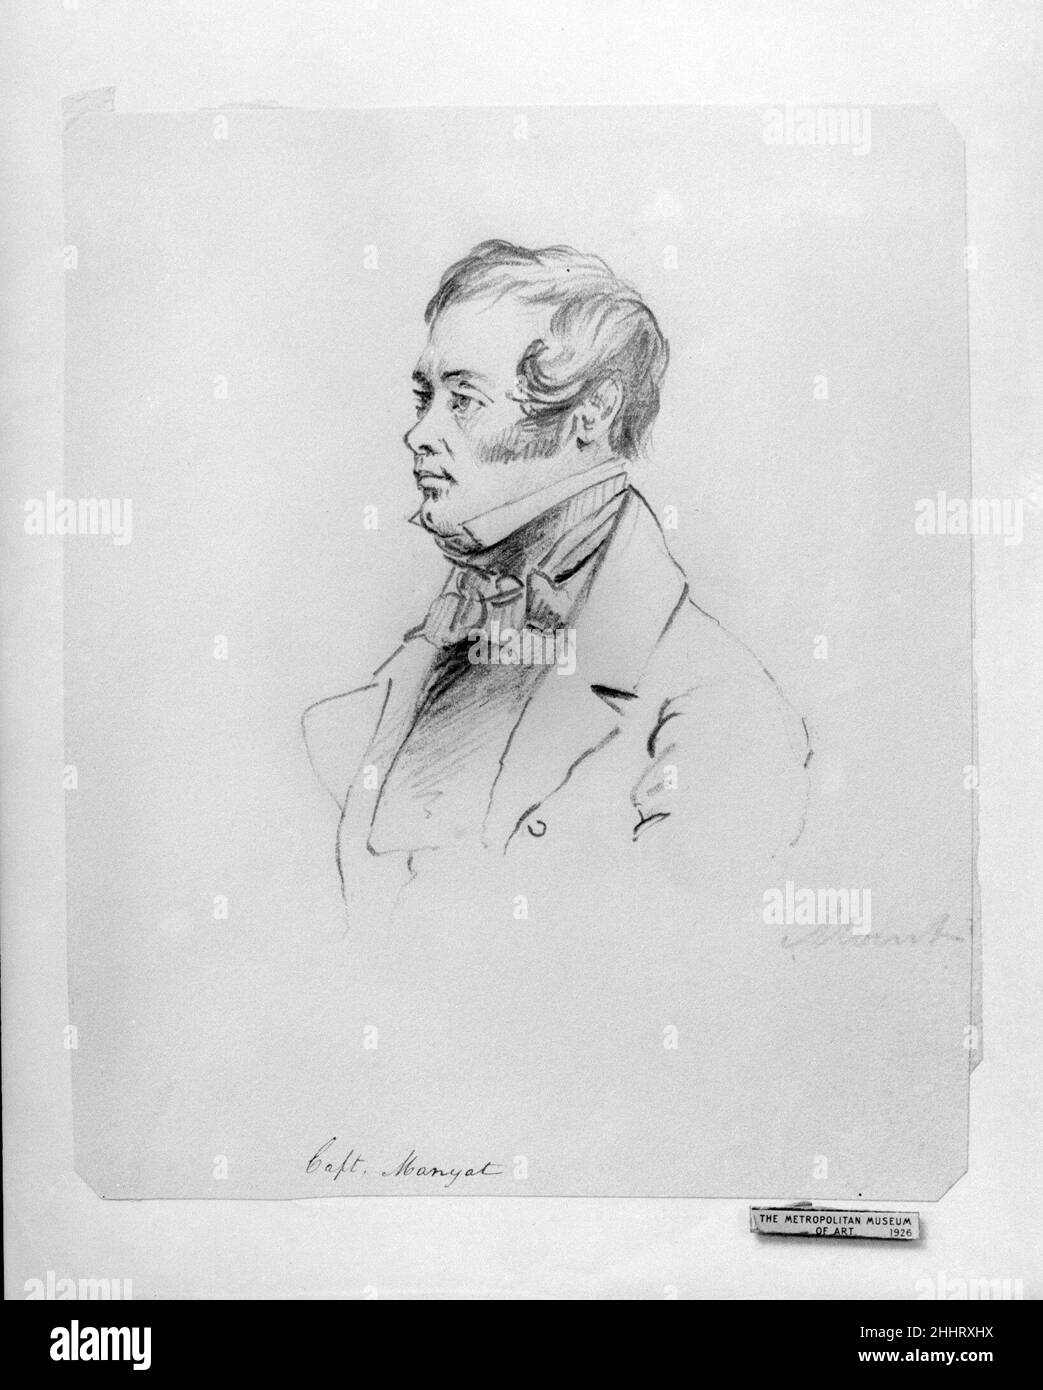 Captain Manyat (from McGuire Scrapbook) Shepard Alonzo Mount. Captain Manyat (from McGuire Scrapbook). Shepard Alonzo Mount (1804–1868). American. Graphite on off-white wove paper Stock Photo